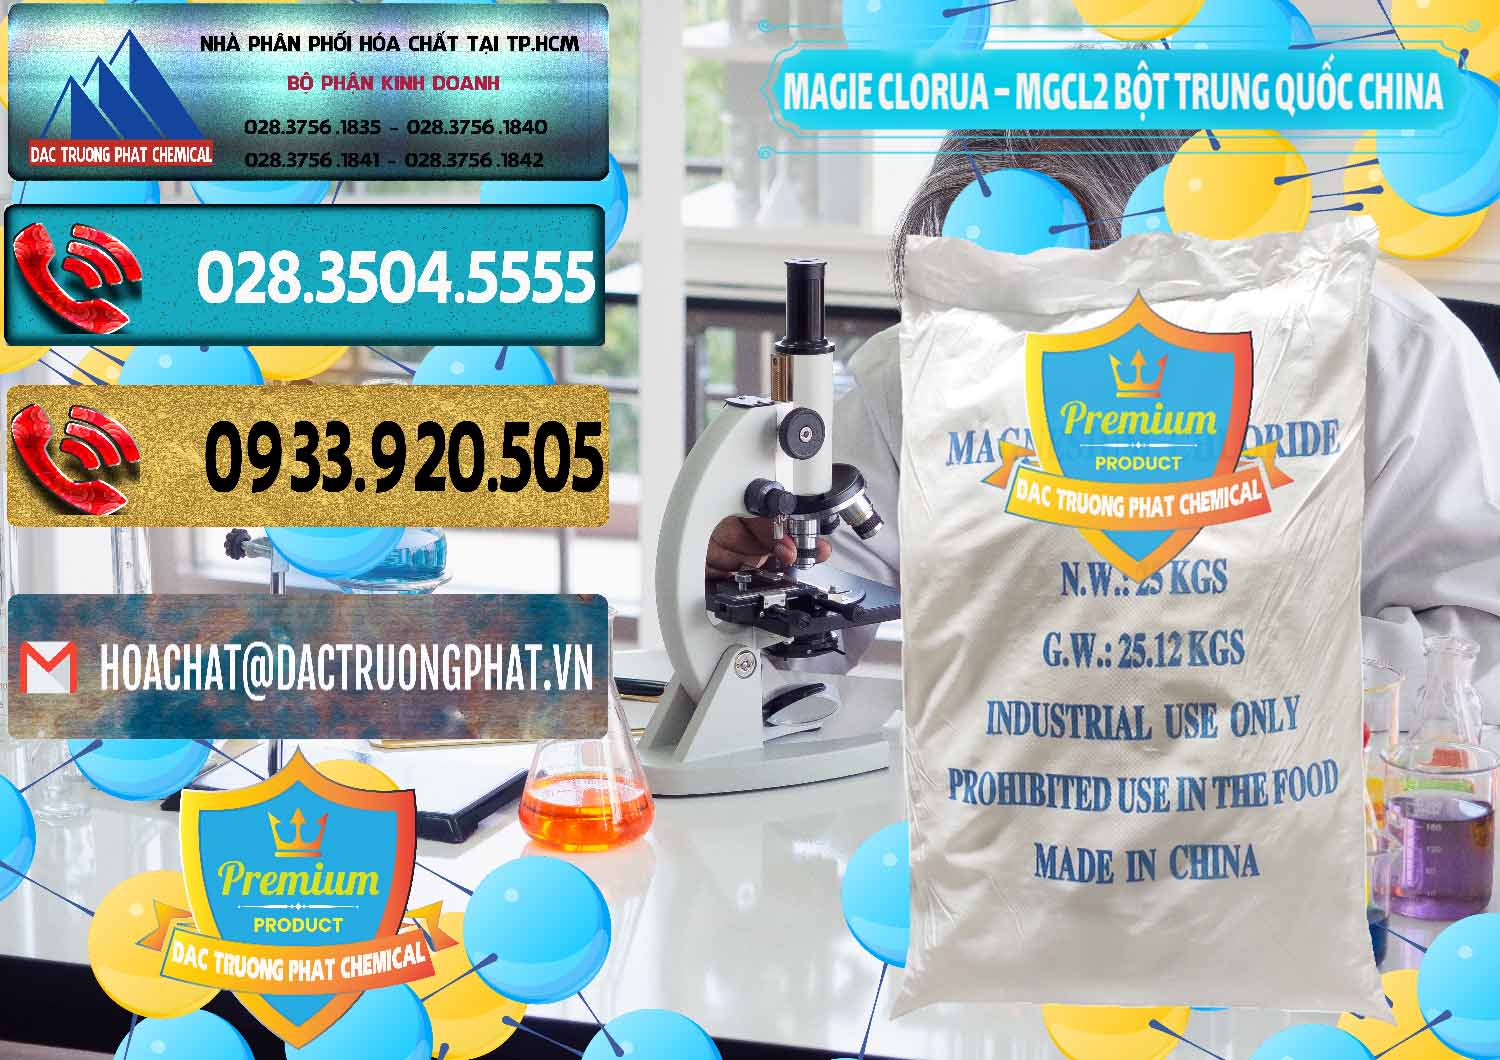 Công ty nhập khẩu ( bán ) Magie Clorua – MGCL2 96% Dạng Bột Bao Chữ Xanh Trung Quốc China - 0207 - Nhà cung ứng & phân phối hóa chất tại TP.HCM - hoachatdetnhuom.com